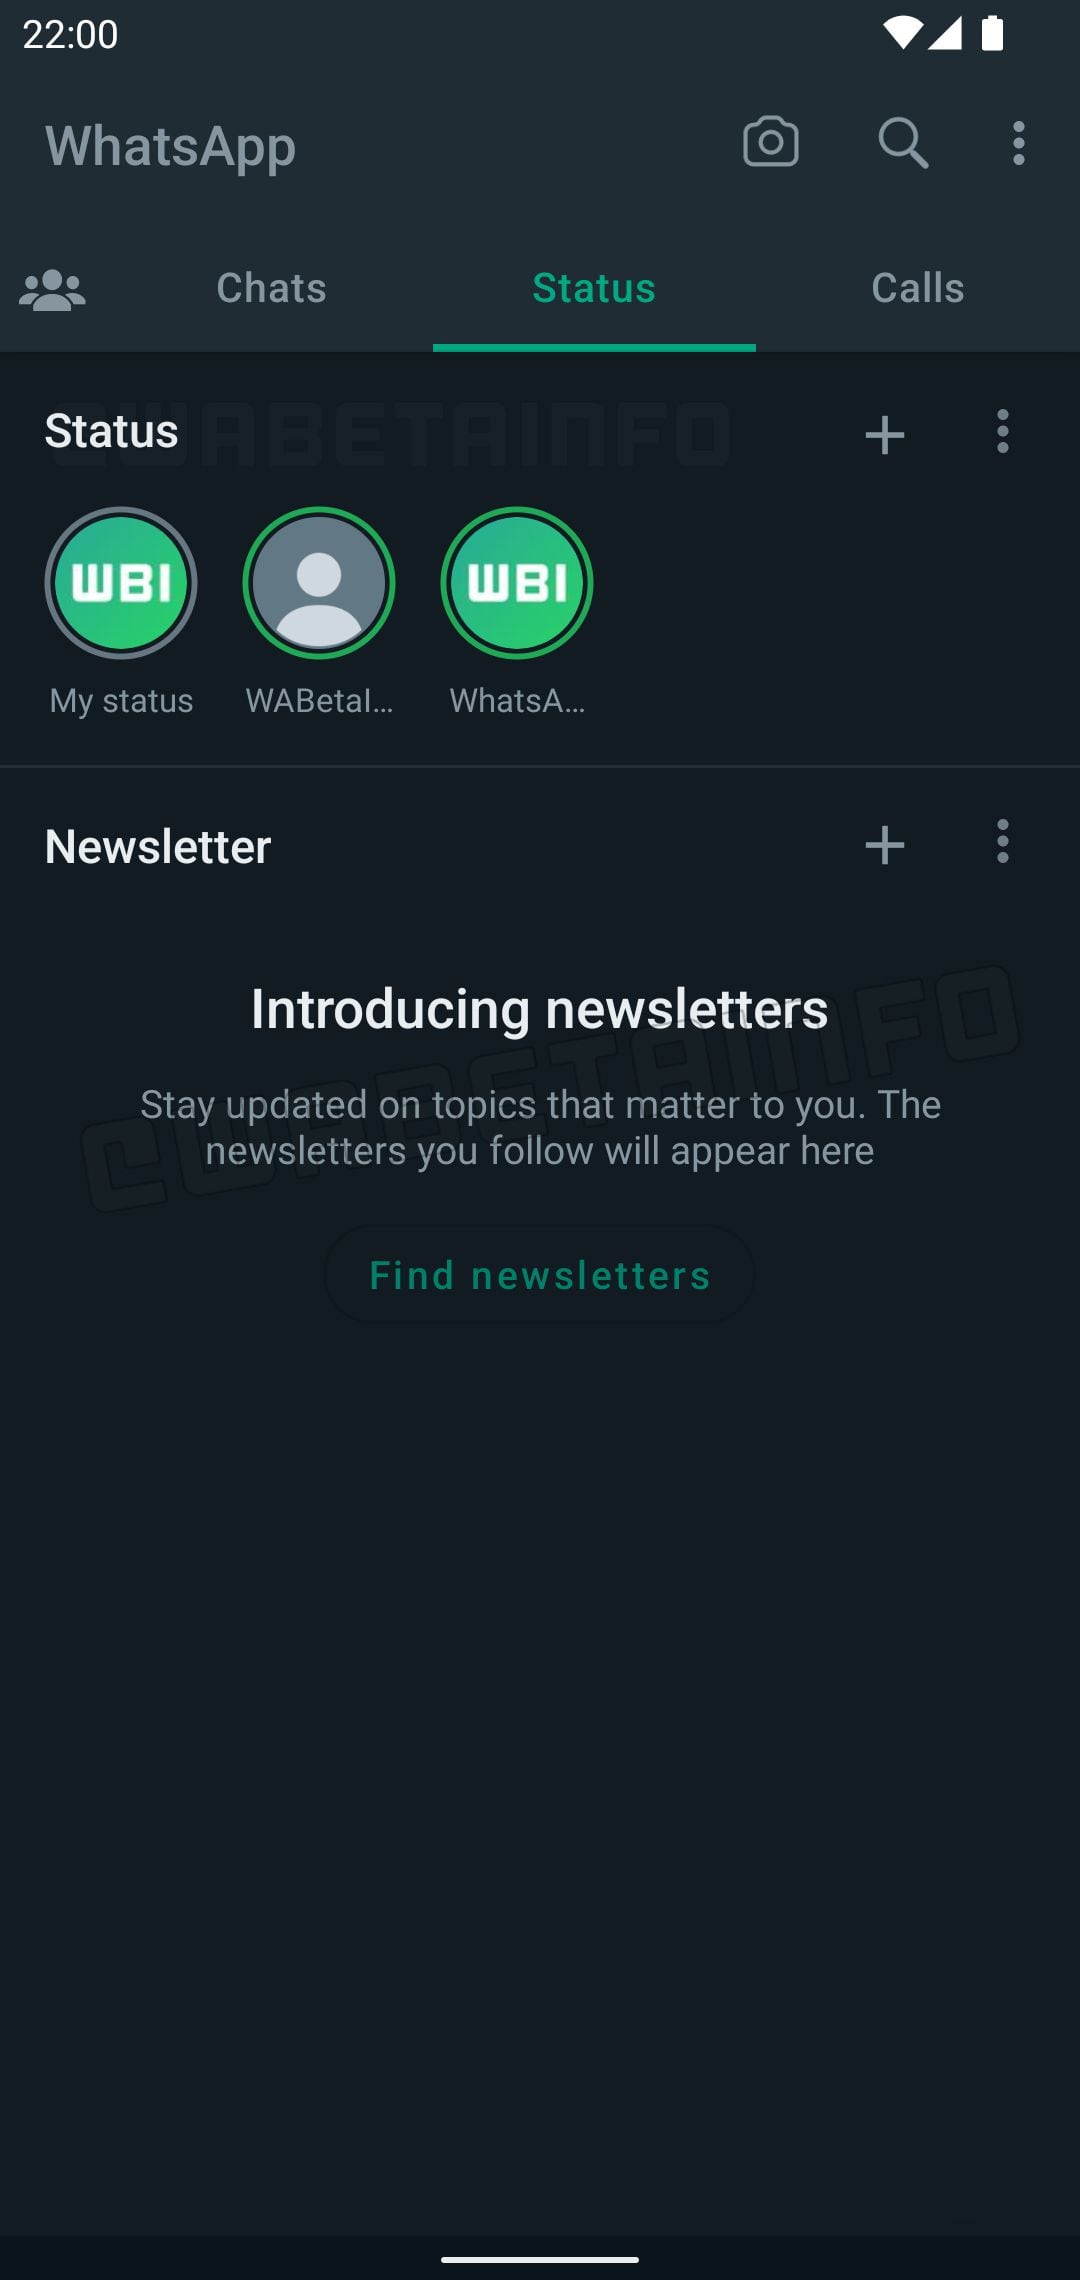 WhatsApp revela novedades sobre su función de newsletters.